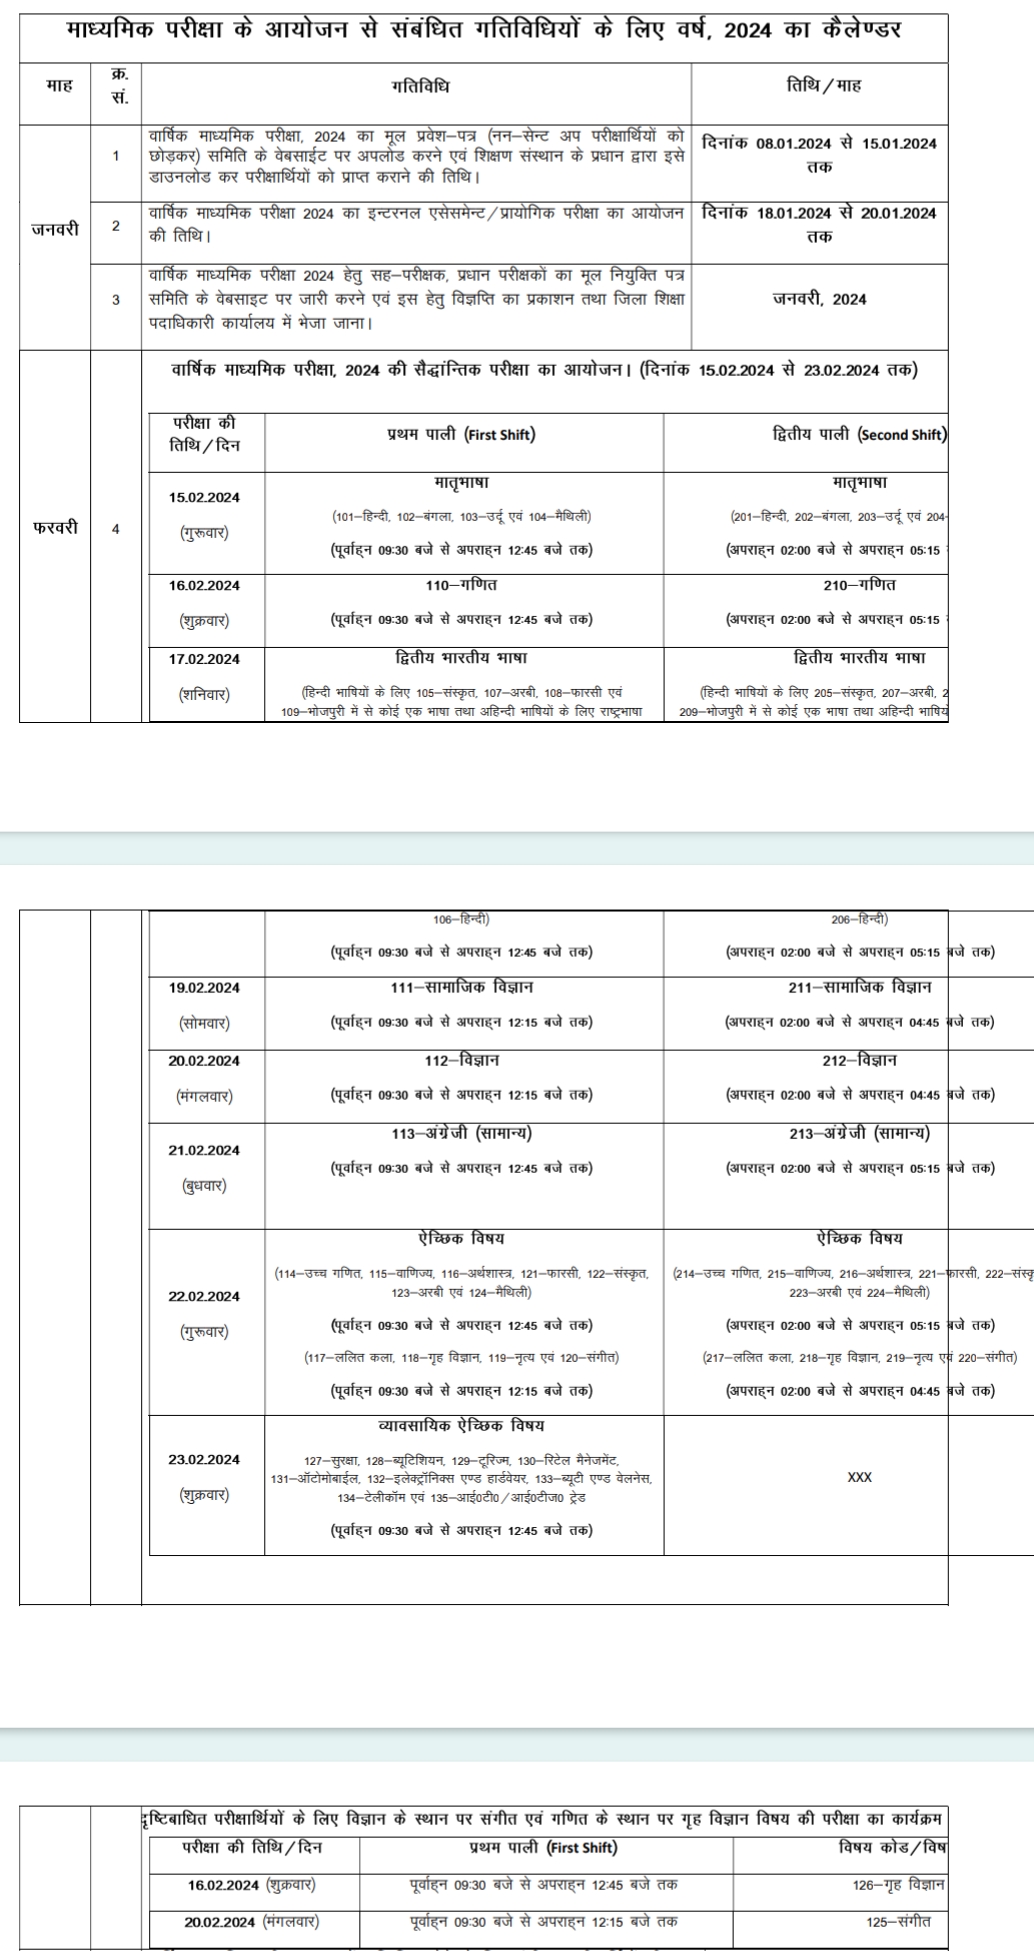 Bihar Board Matric Exam Timetable 2024 Download Direct Best लिंक जारी : बिहार बोर्ड ने जारी किया फाइनल मैट्रिक परीक्षा कैलेंडर